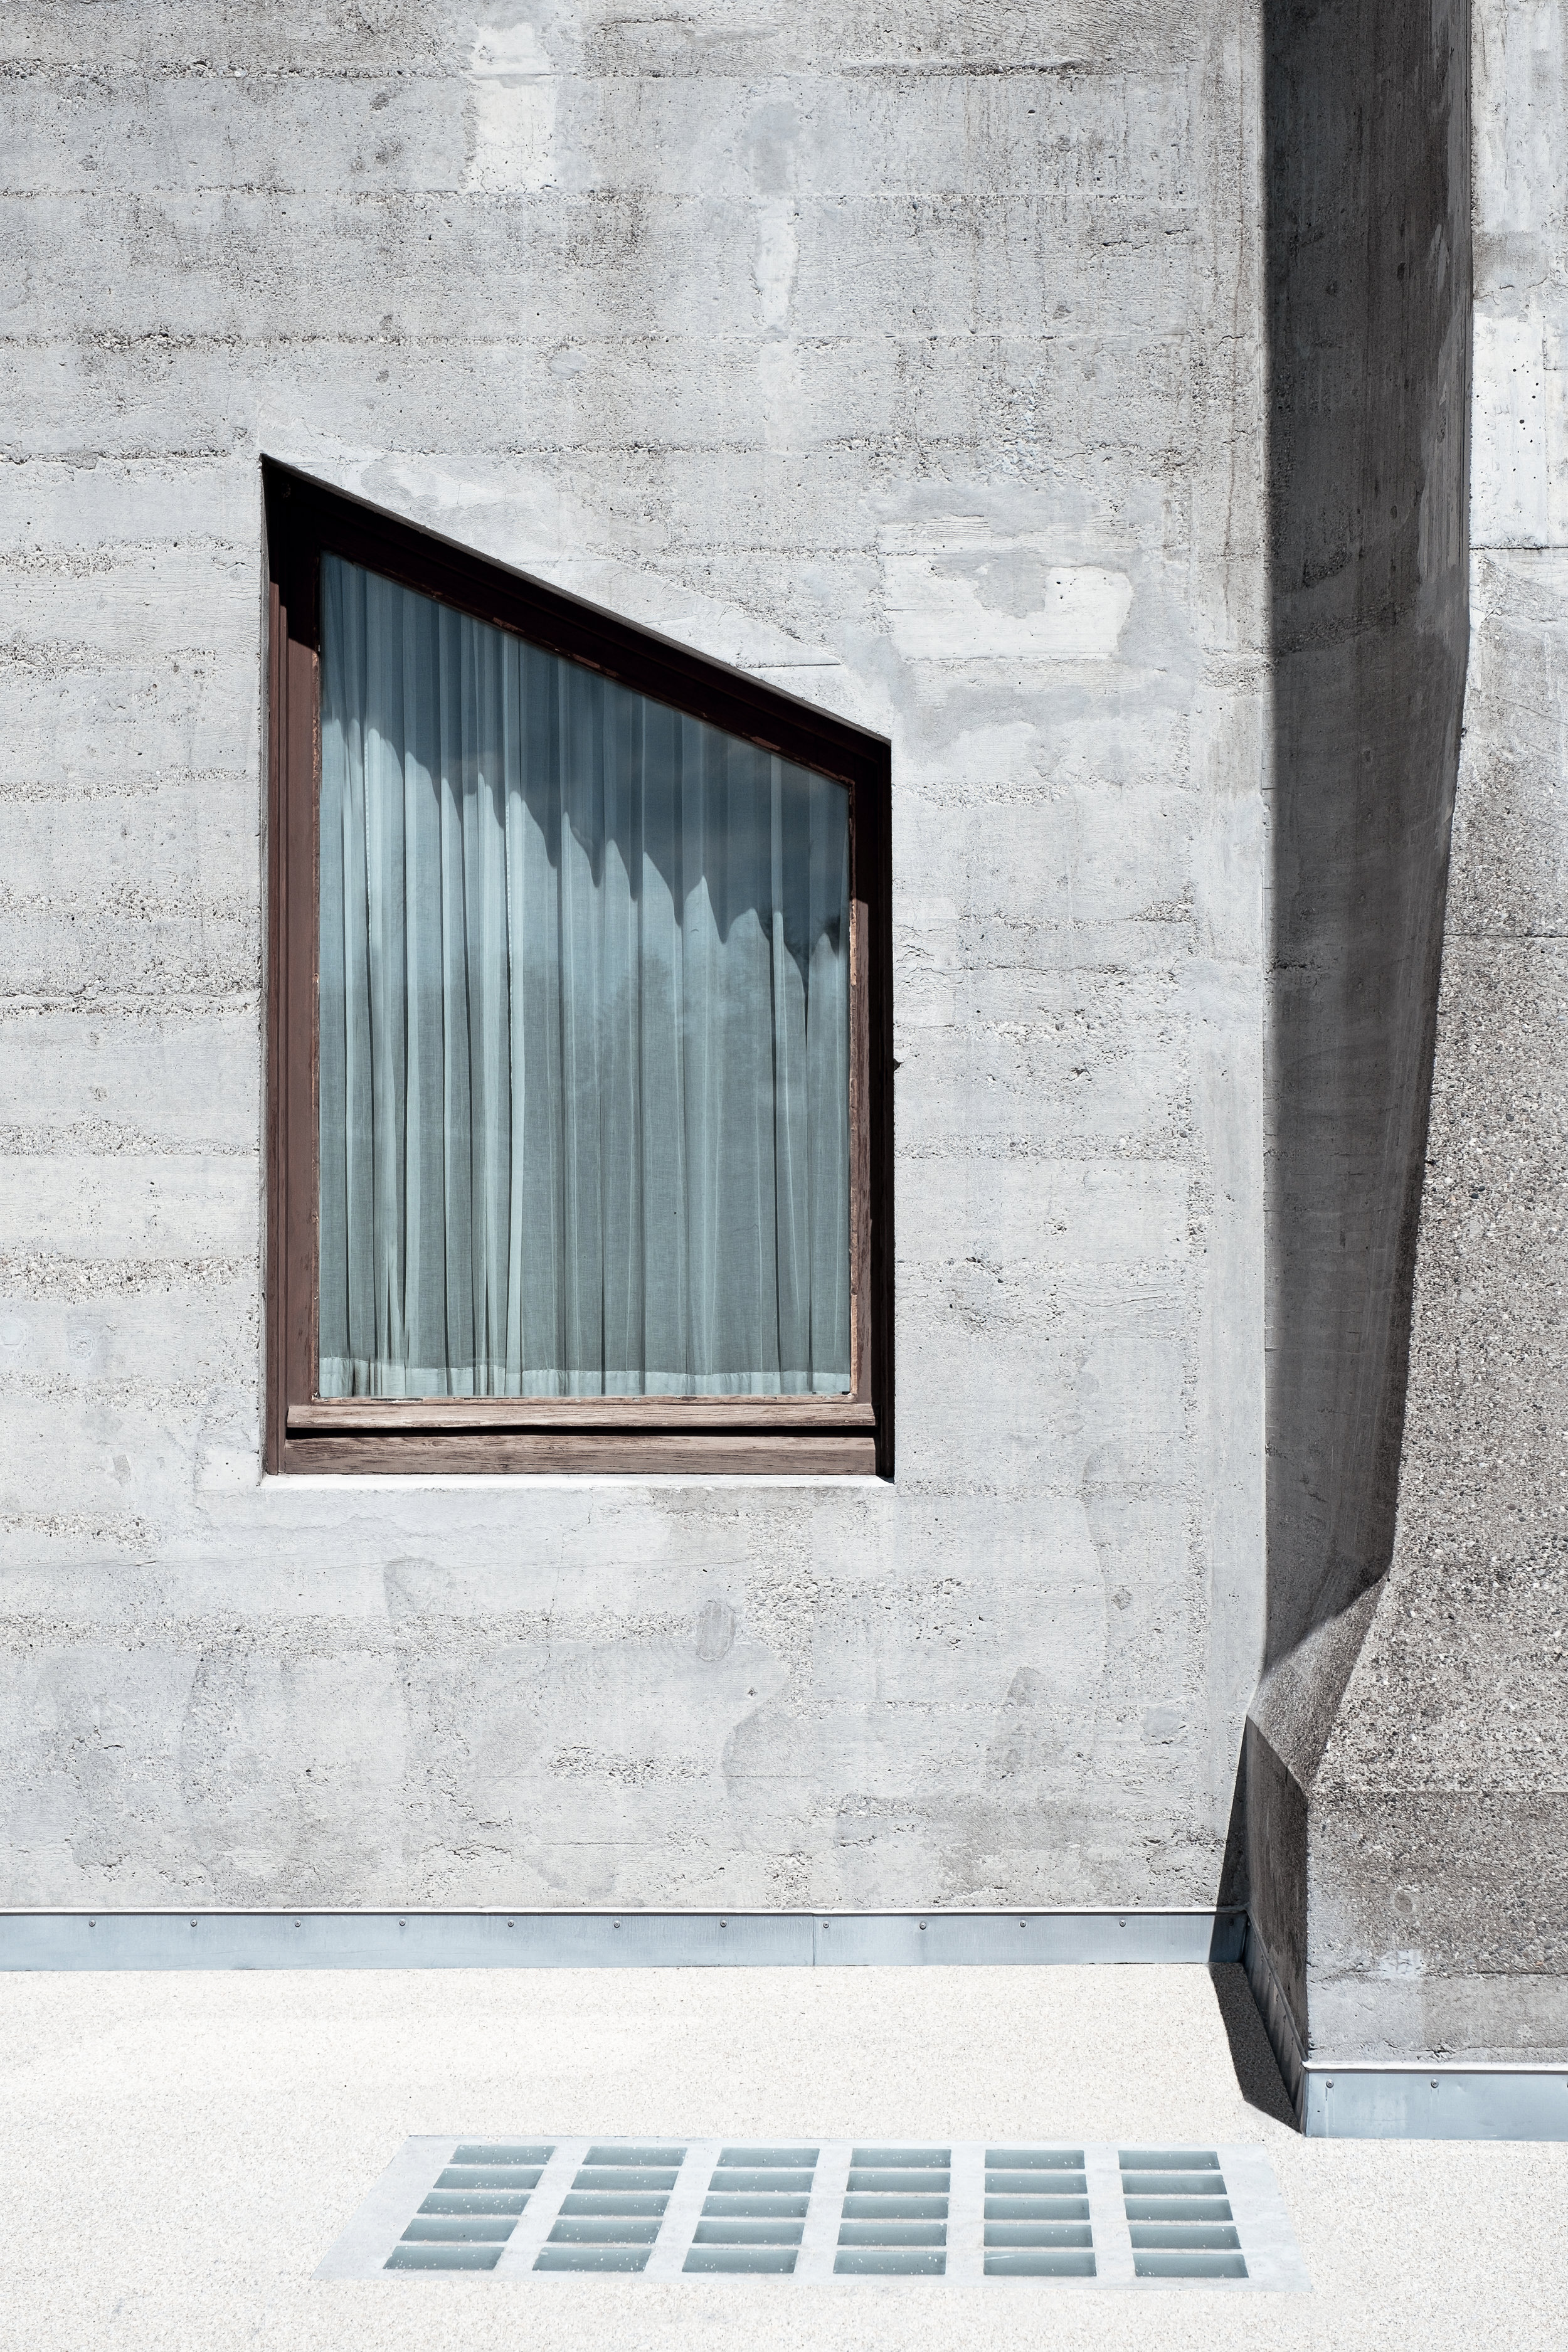 Goetheanum_2019_MTD_596-Edit.jpg